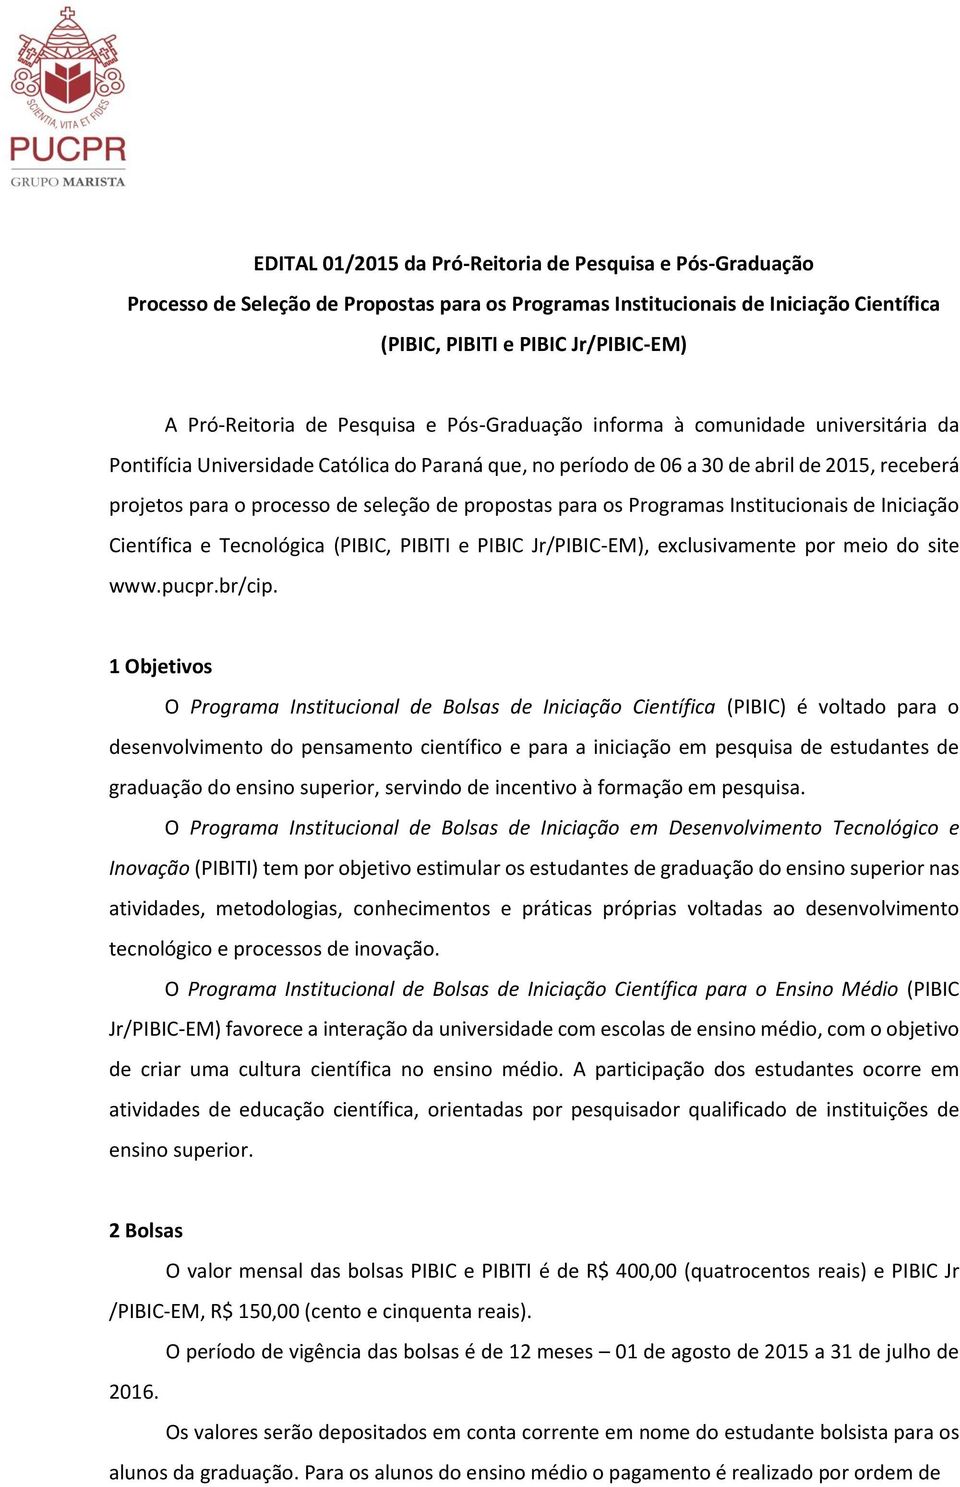 de propostas para os Programas Institucionais de Iniciação Científica e Tecnológica (PIBIC, PIBITI e PIBIC Jr/PIBIC-EM), exclusivamente por meio do site www.pucpr.br/cip.